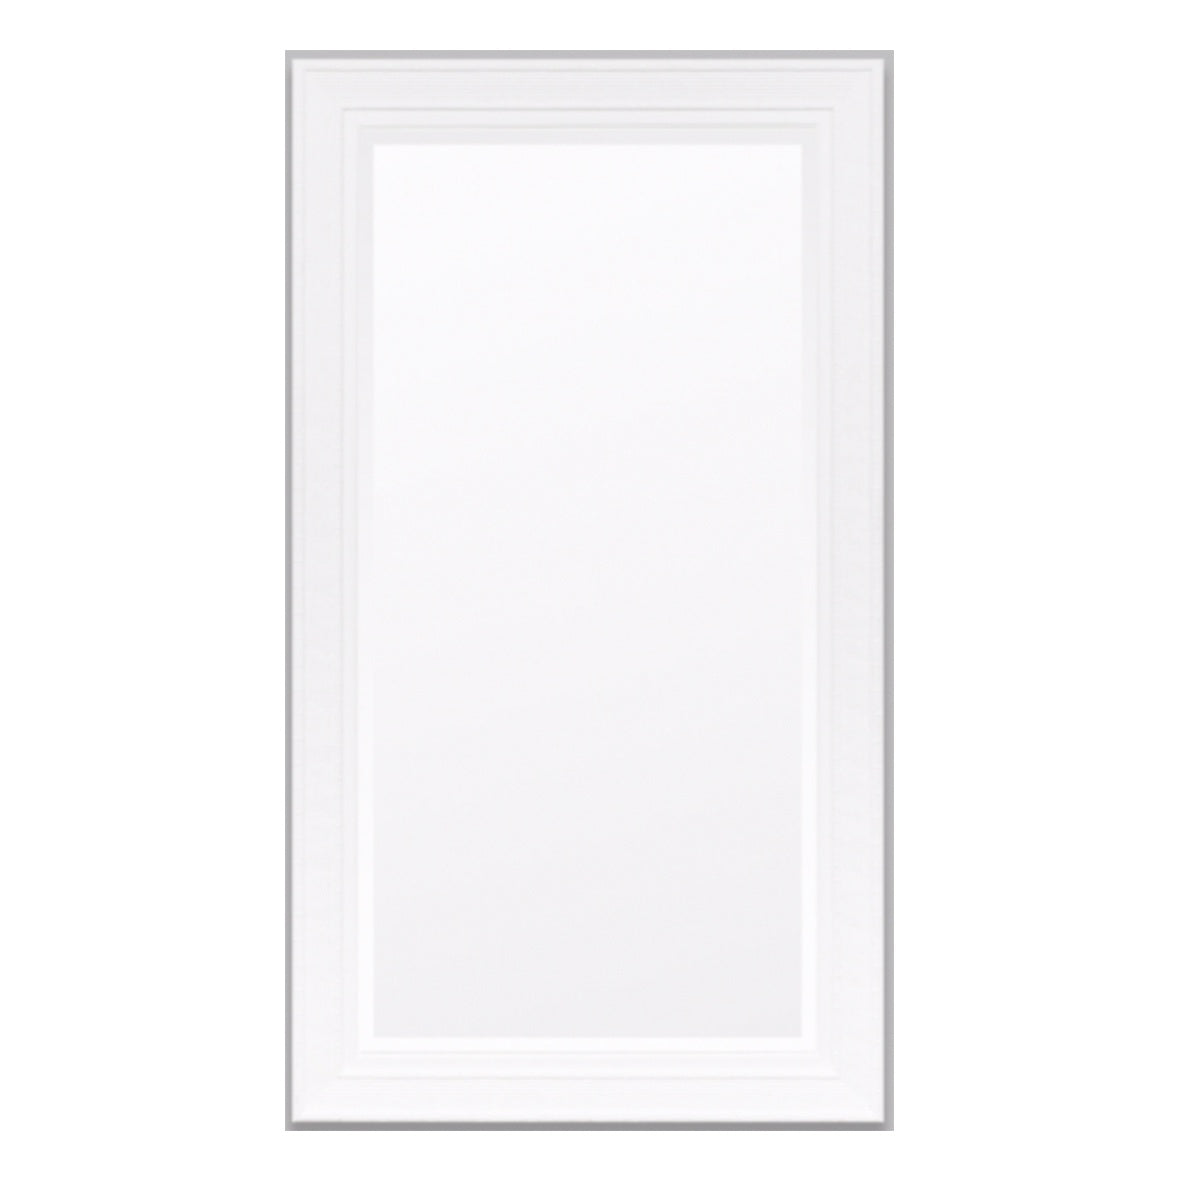 Chinoise Mirror | White | 2 Sizes